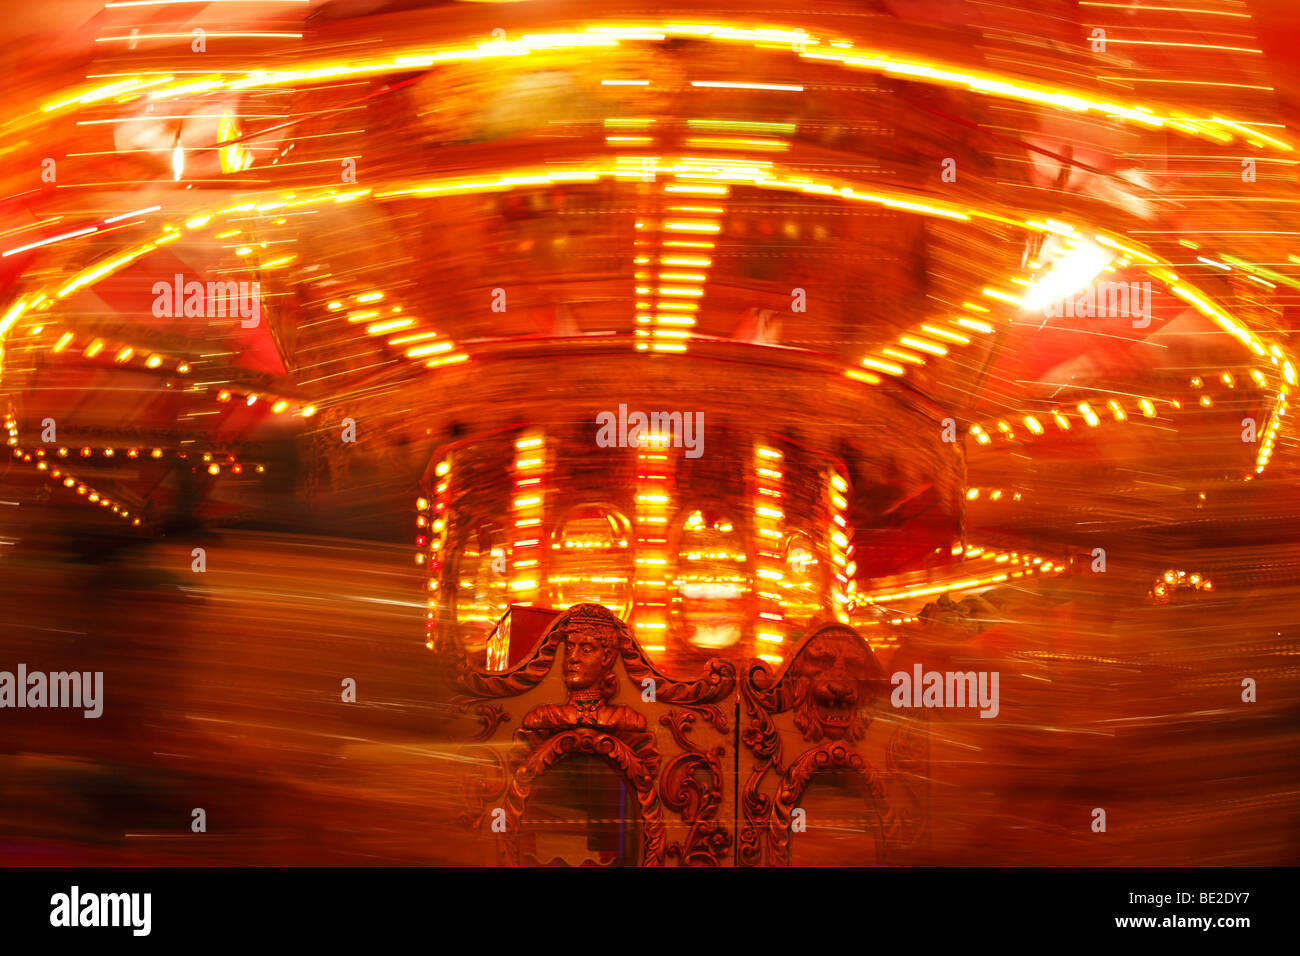 Carrousel de foire de spinning ride illuminé la nuit, 'St Giles' fête foraine, Oxford, UK Banque D'Images